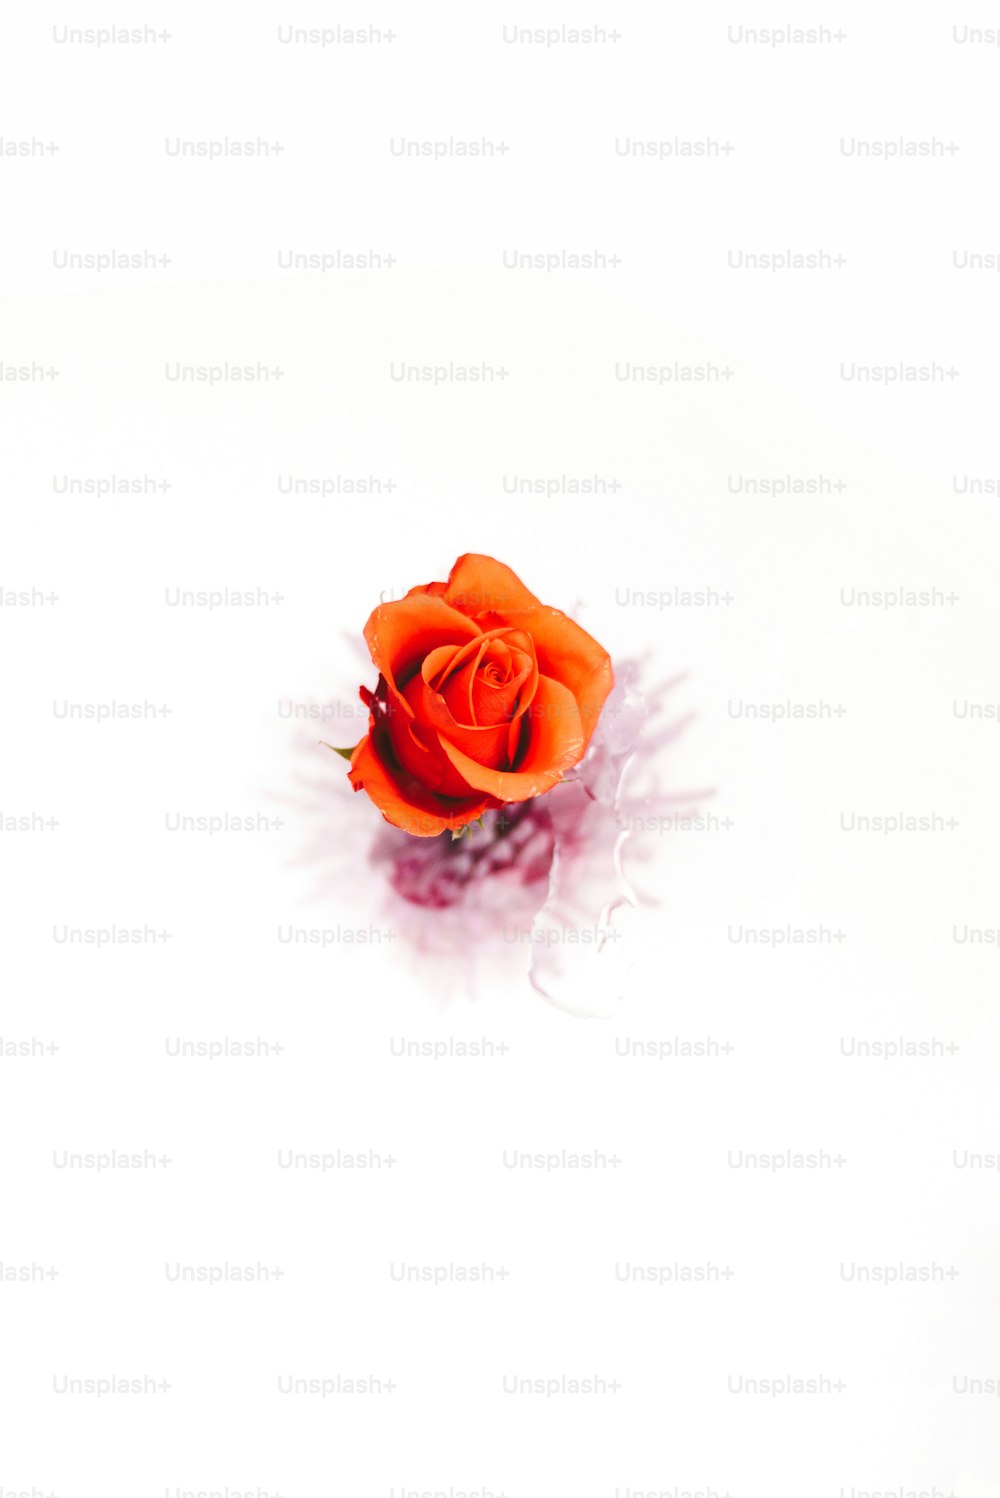 eine einzelne orangefarbene Rose auf weißer Fläche